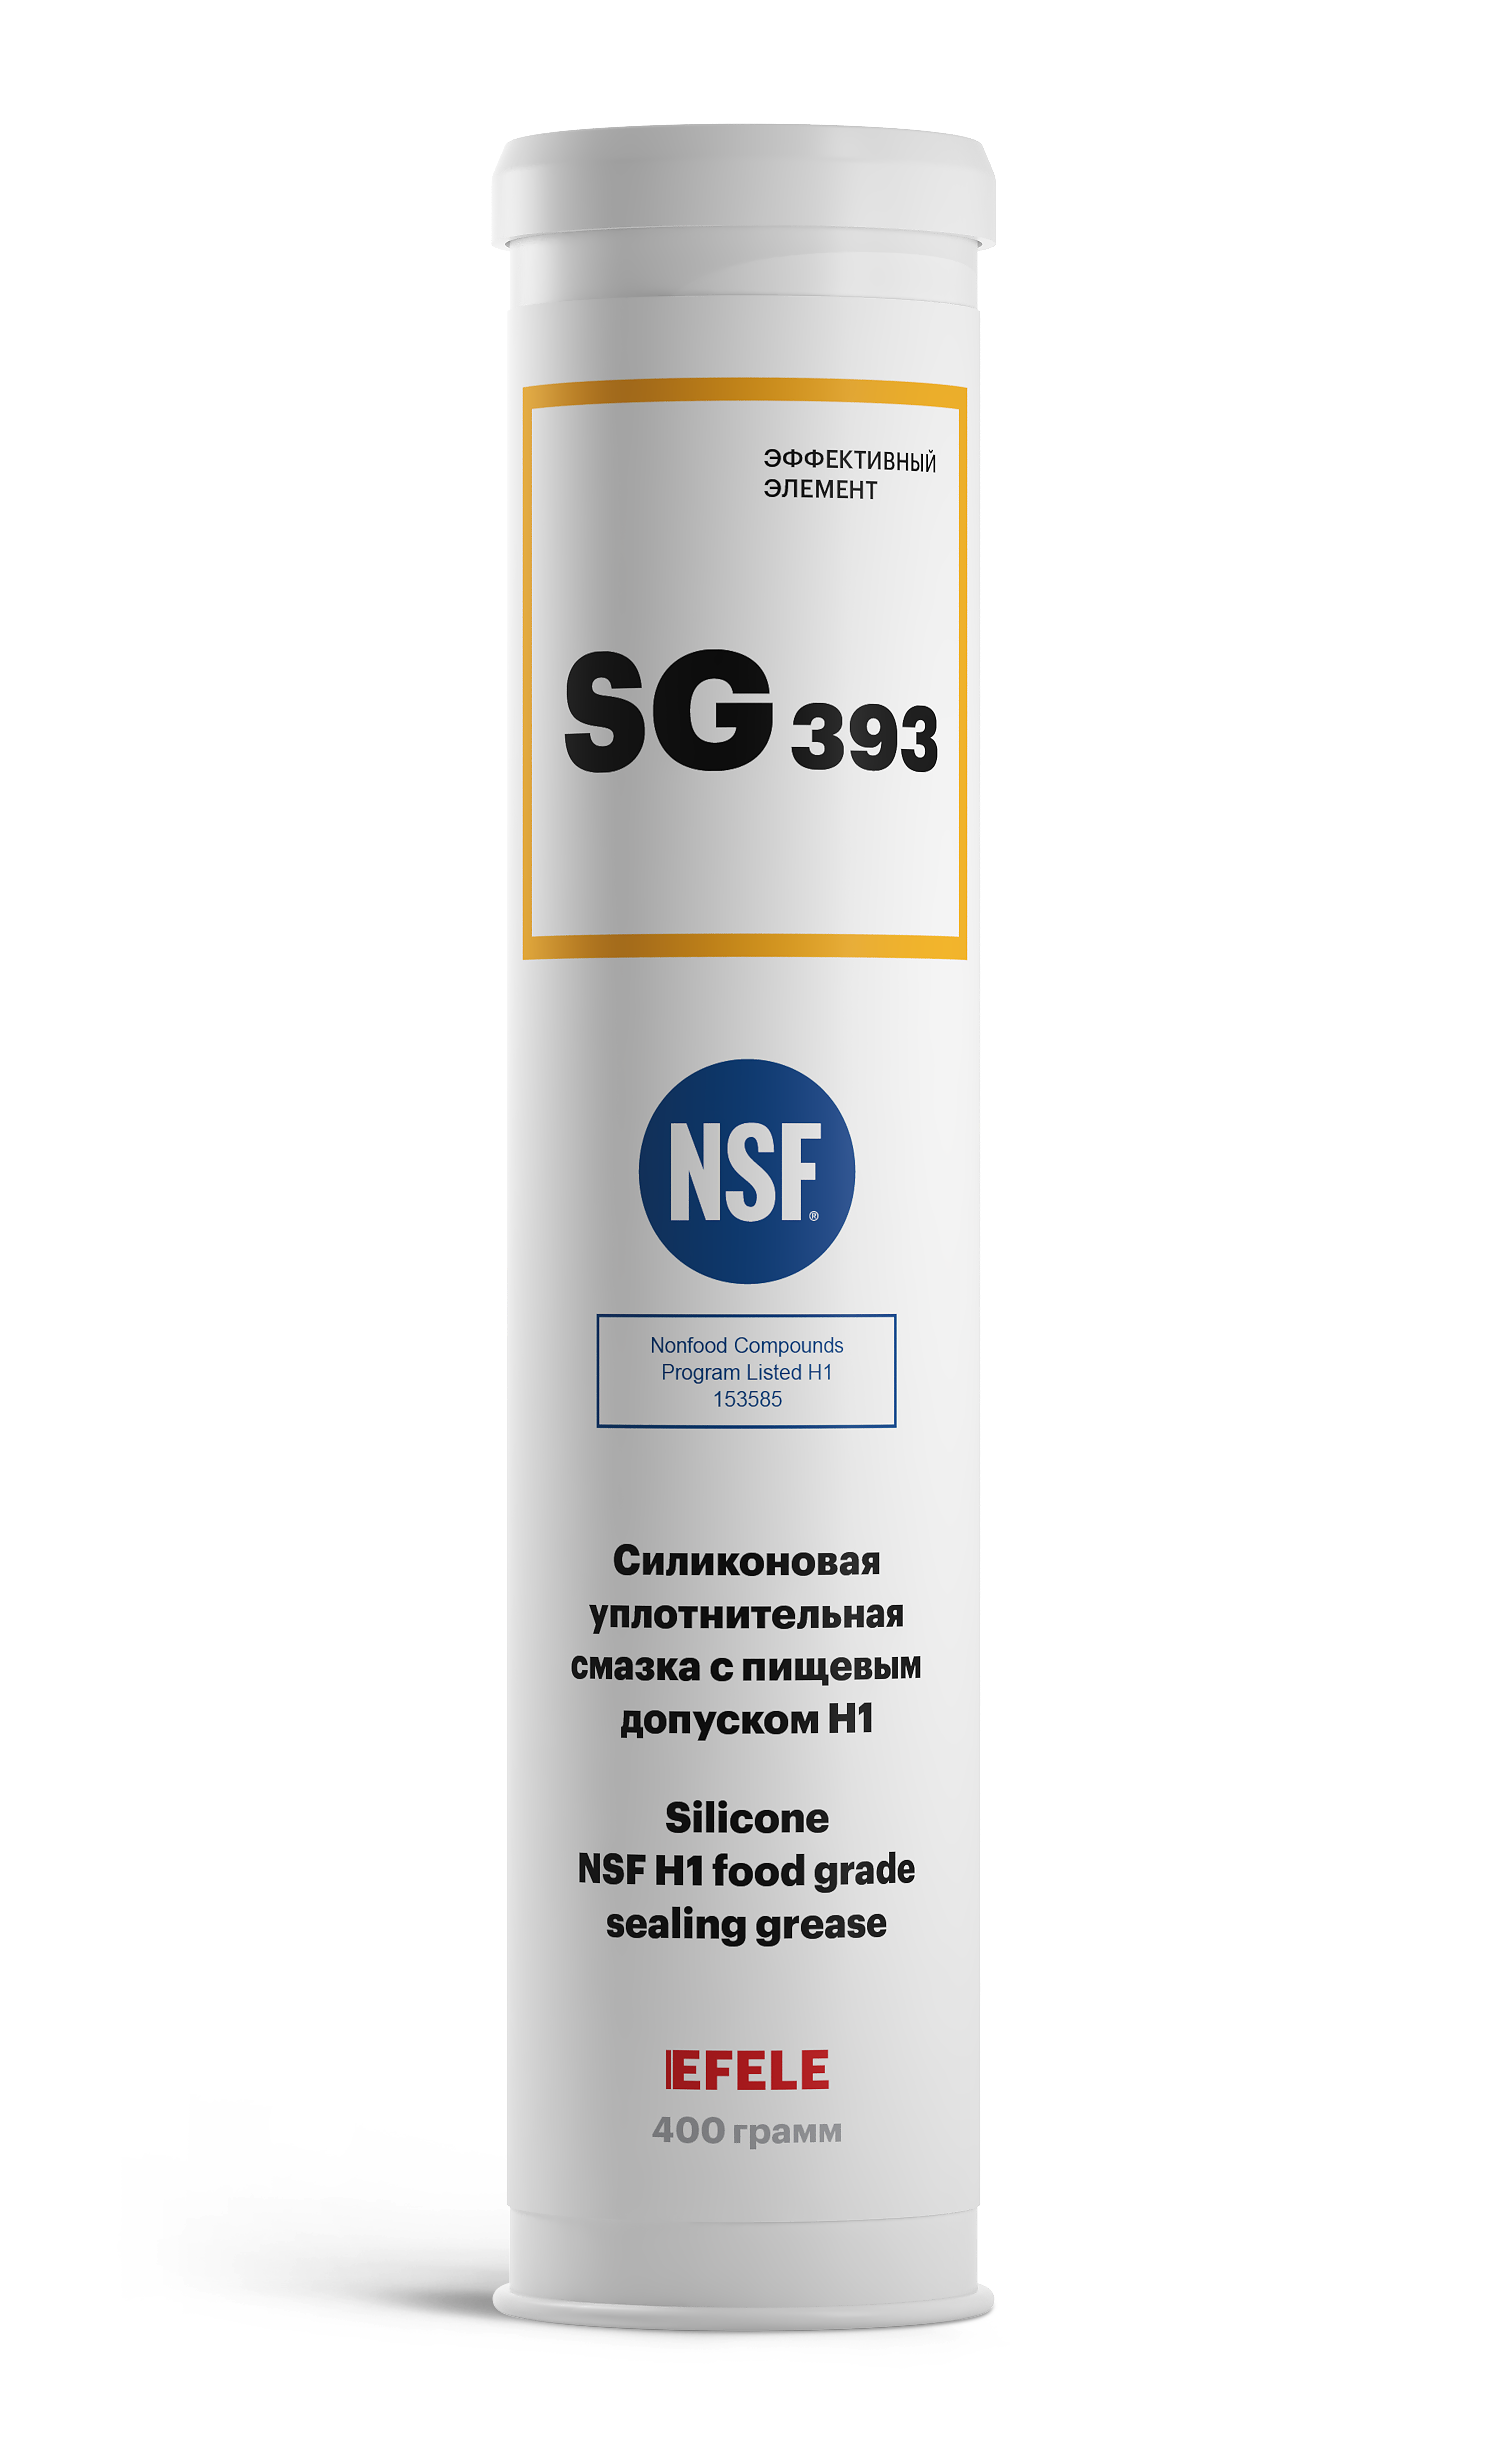 Пластичная силиконовая смазка с пищевым допуском NSF H1 EFELE SG-393